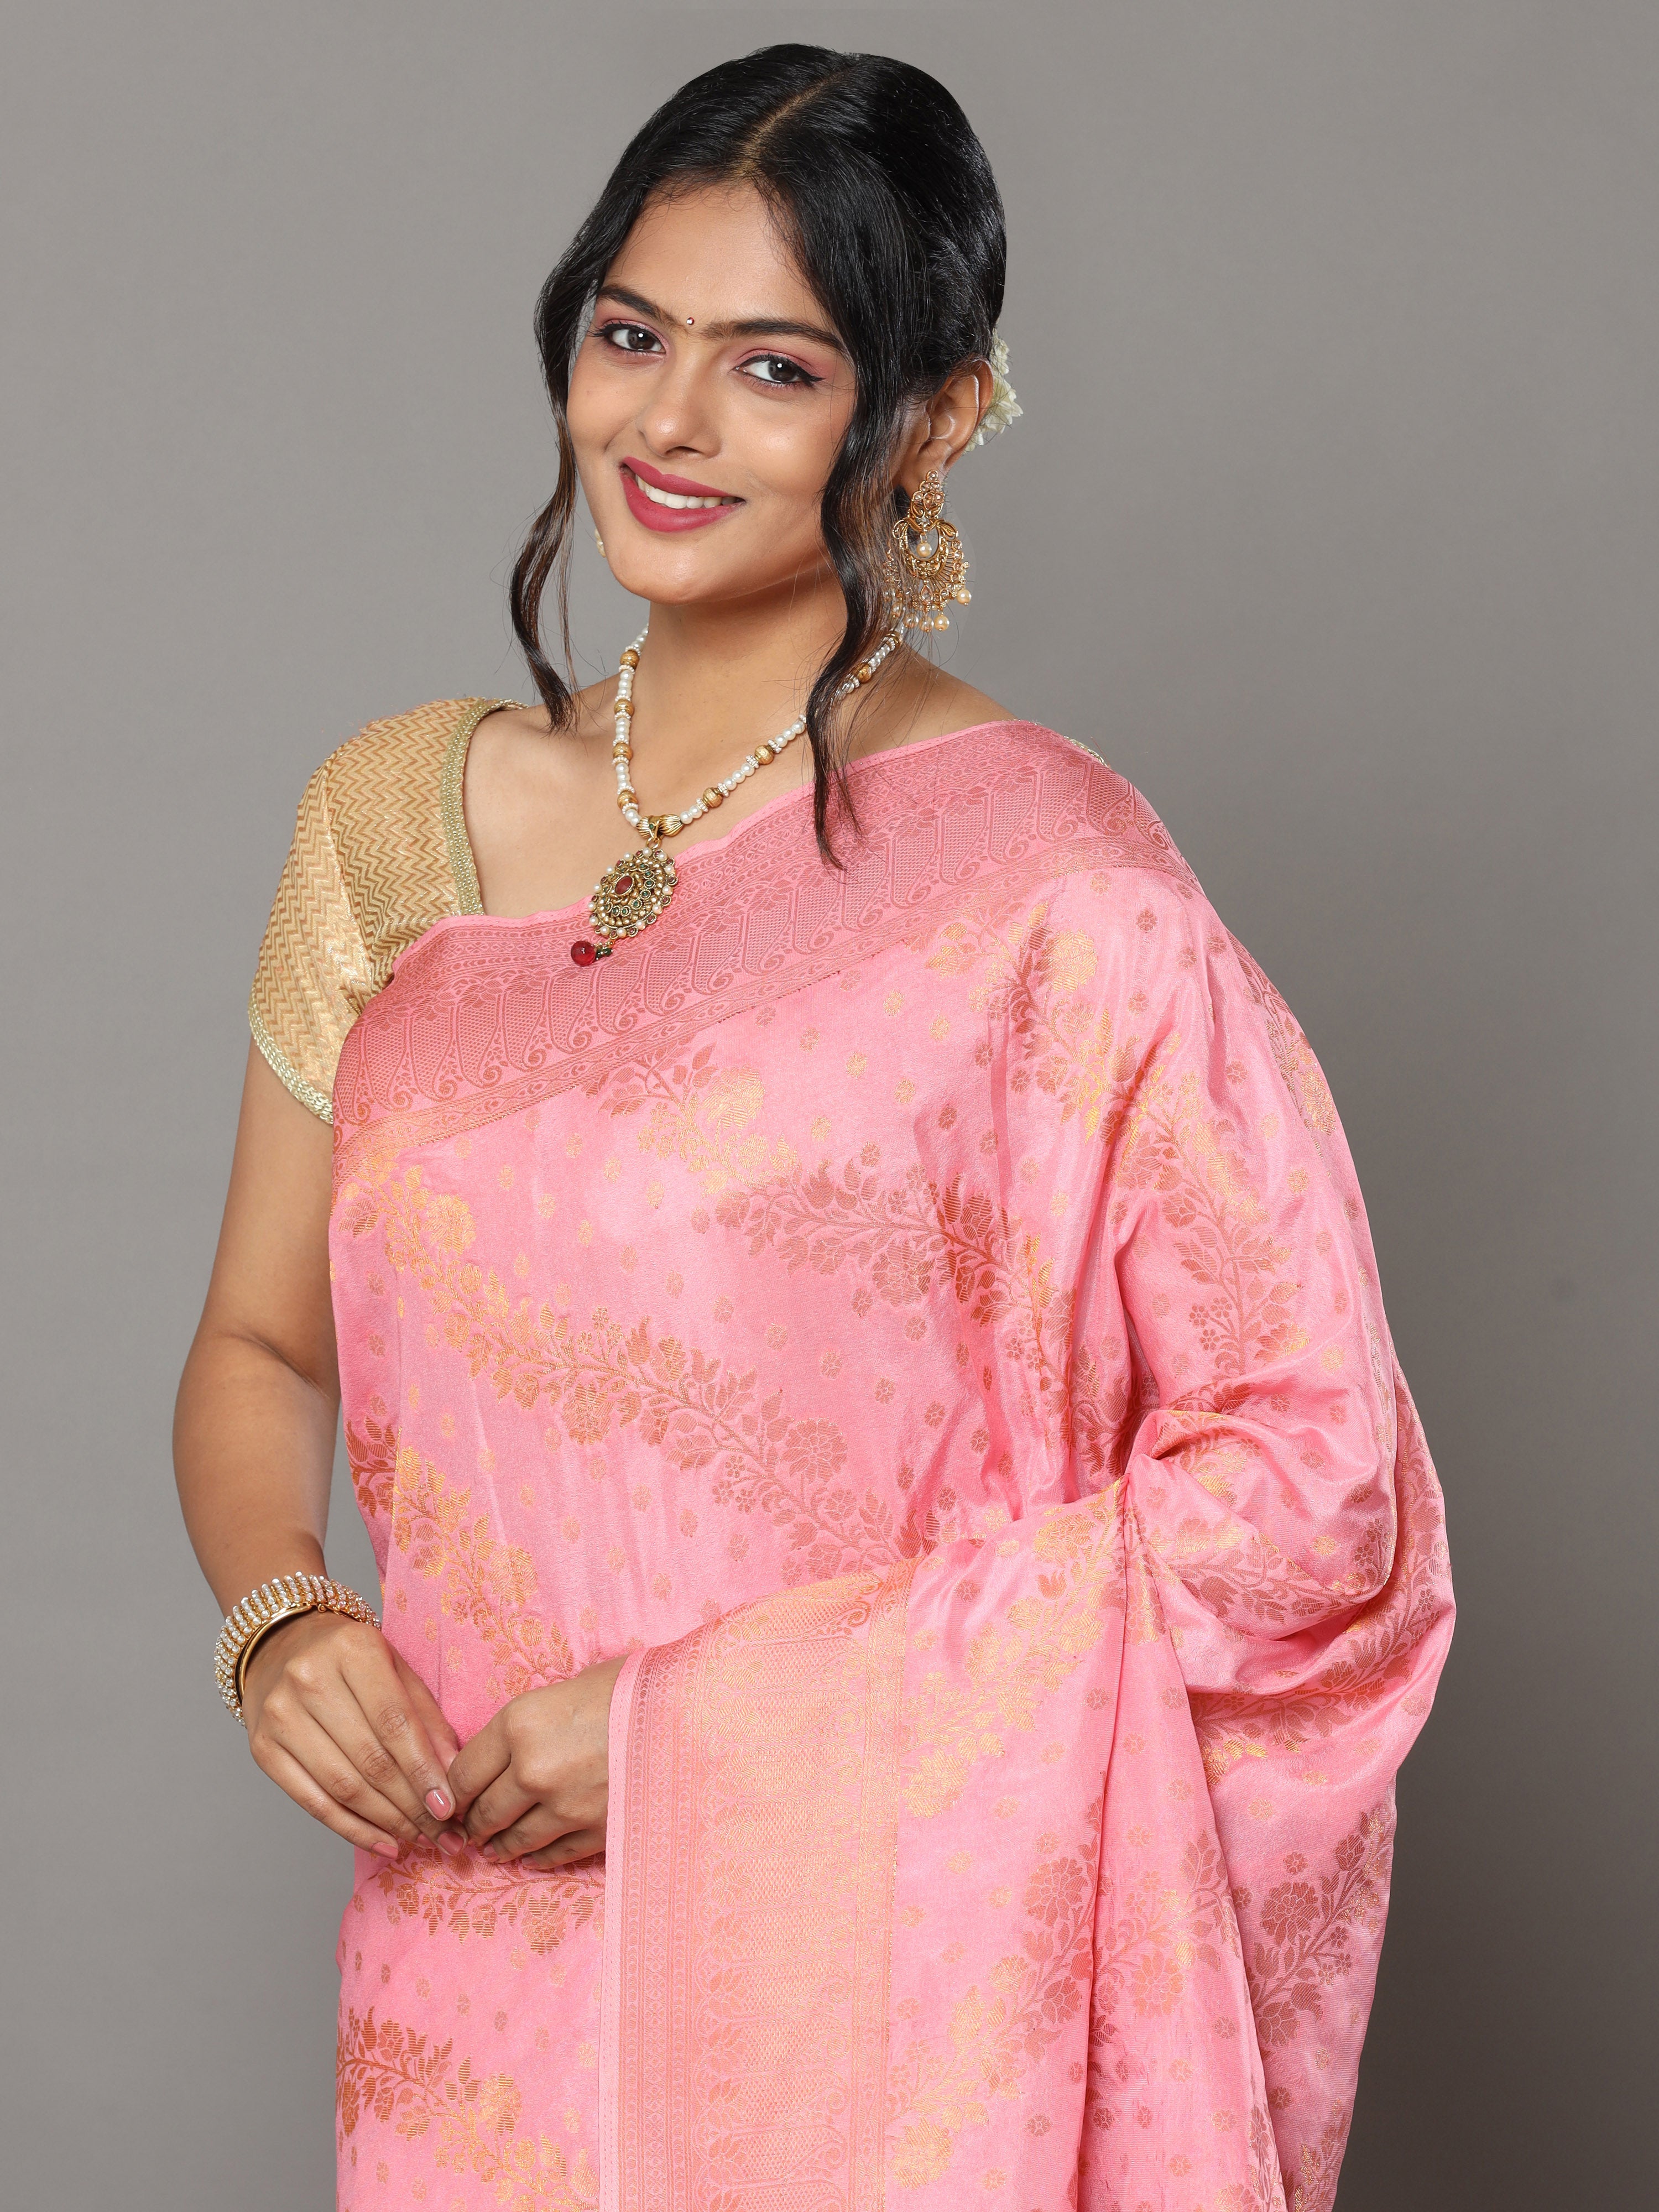 HerClozet Women's Banarasi Lahariya Gaji Silk Gold Zari Saree(Peach Pink)